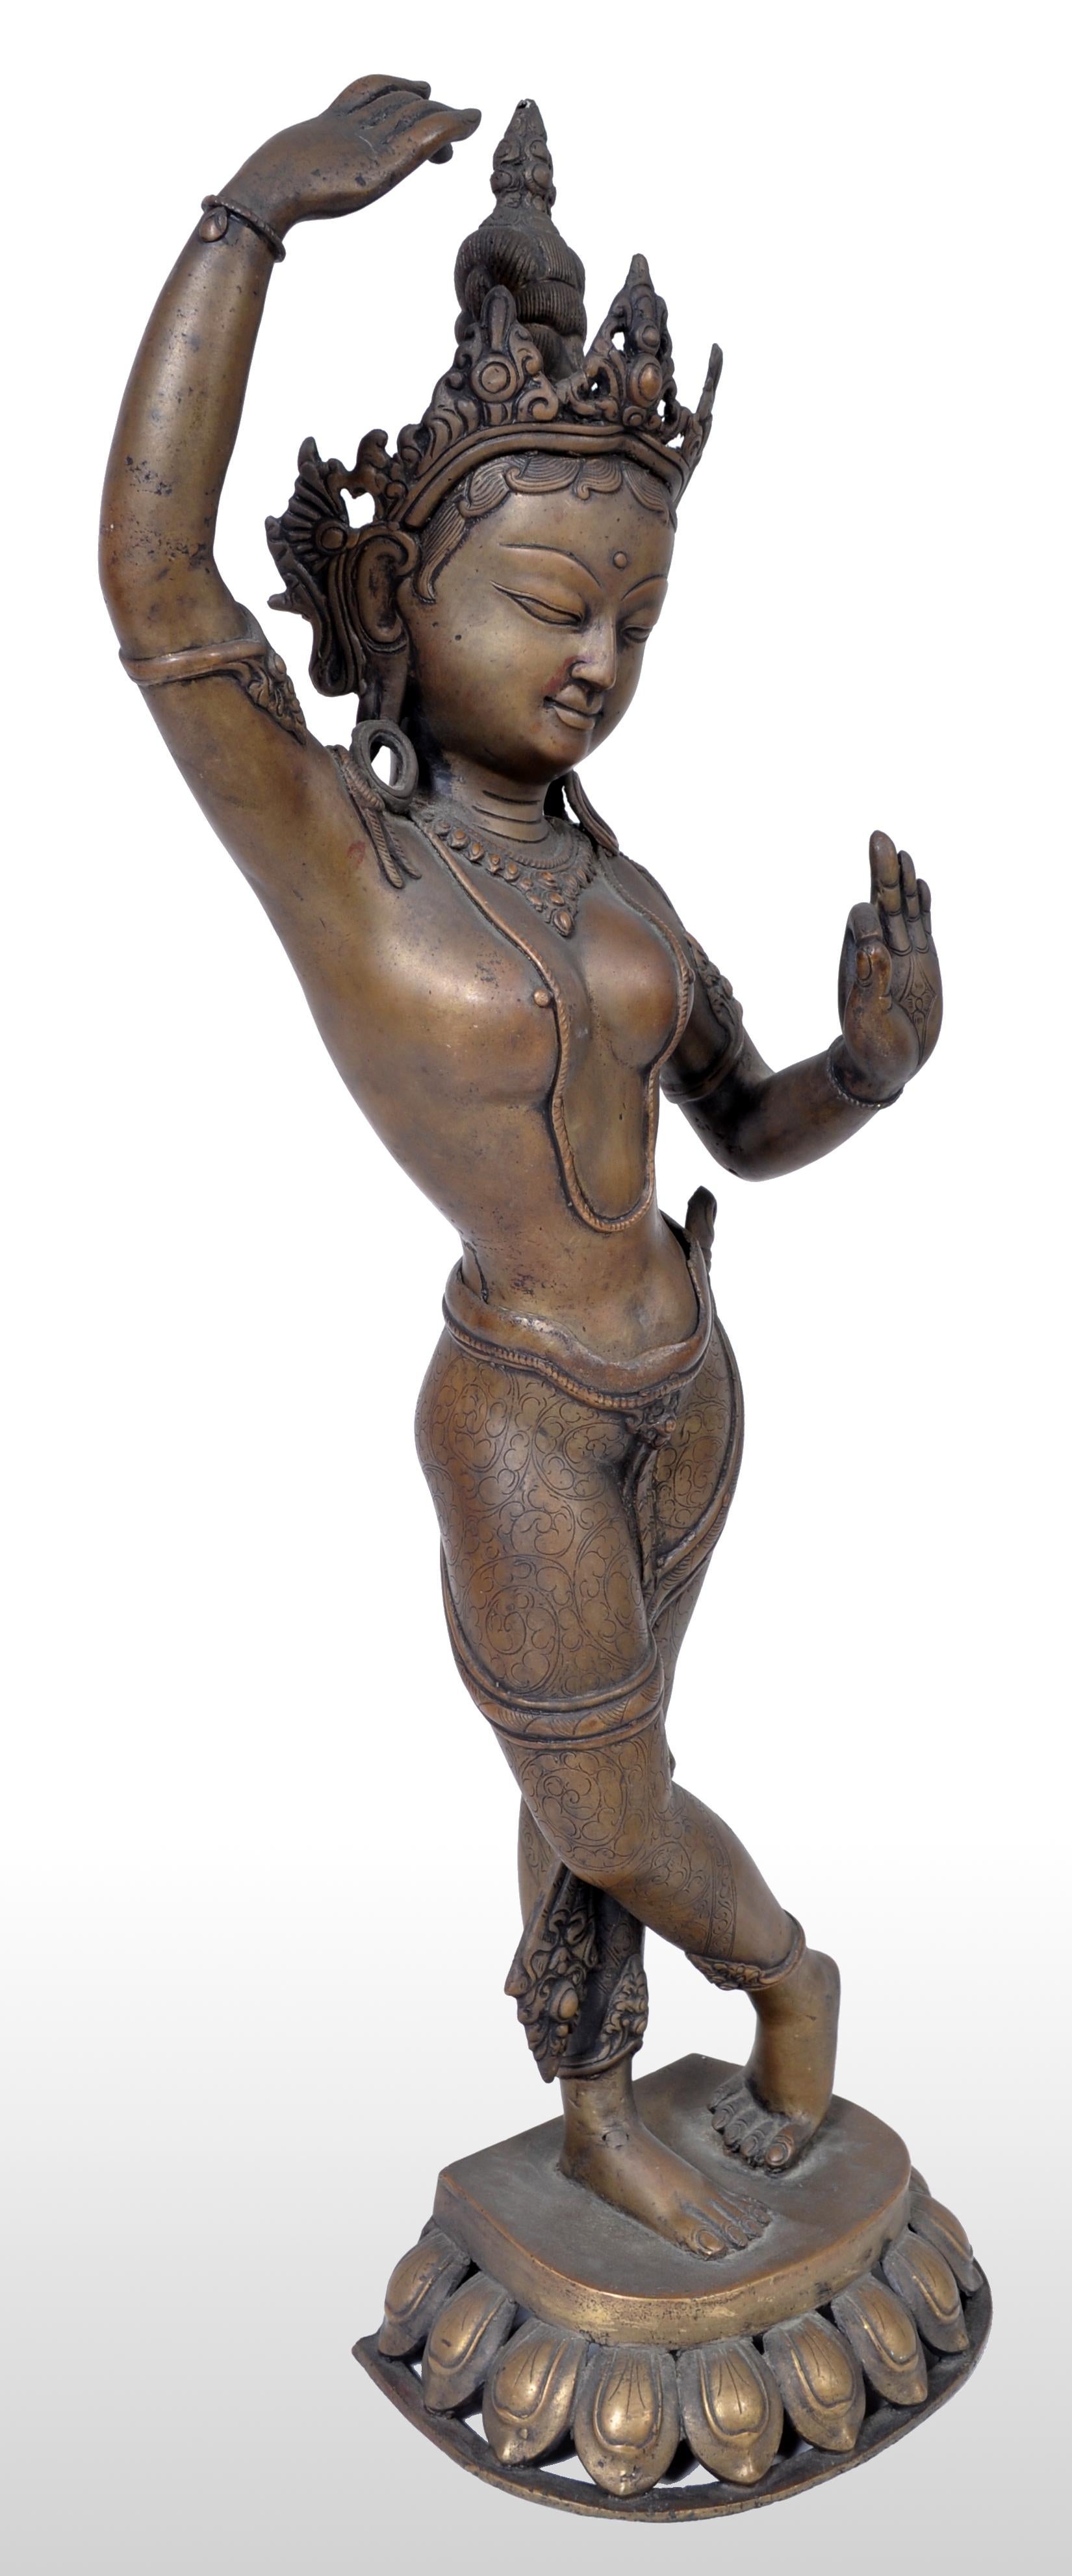 Figure ancienne en bronze indien du début du 19e siècle représentant Lakshmi, vers 1800. Cette figurine en bronze de grande taille représente Lakshmi portant une coiffe ornée et prenant une pose dansante. La figure est posée sur une base en forme de